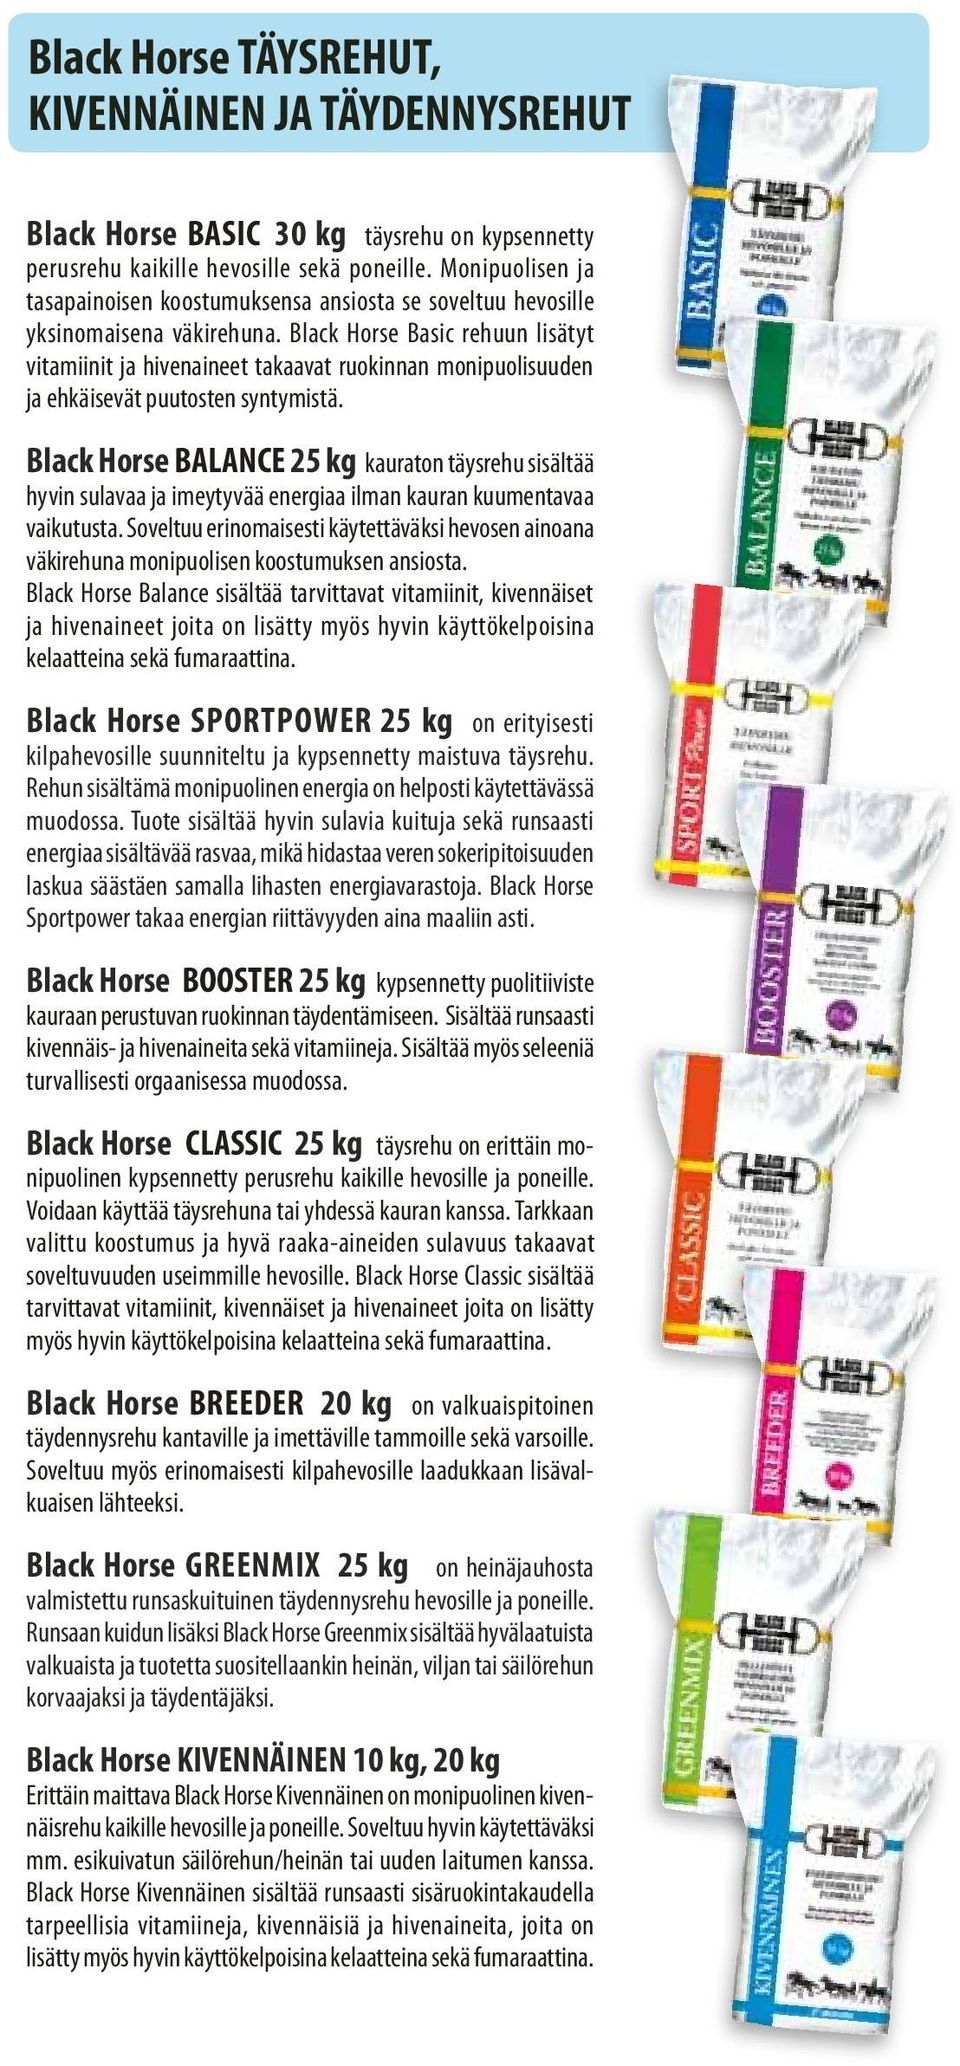 Black Horse Basic rehuun lisätyt vitamiinit ja hivenaineet takaavat ruokinnan monipuolisuuden ja ehkäisevät puutosten syntymistä.